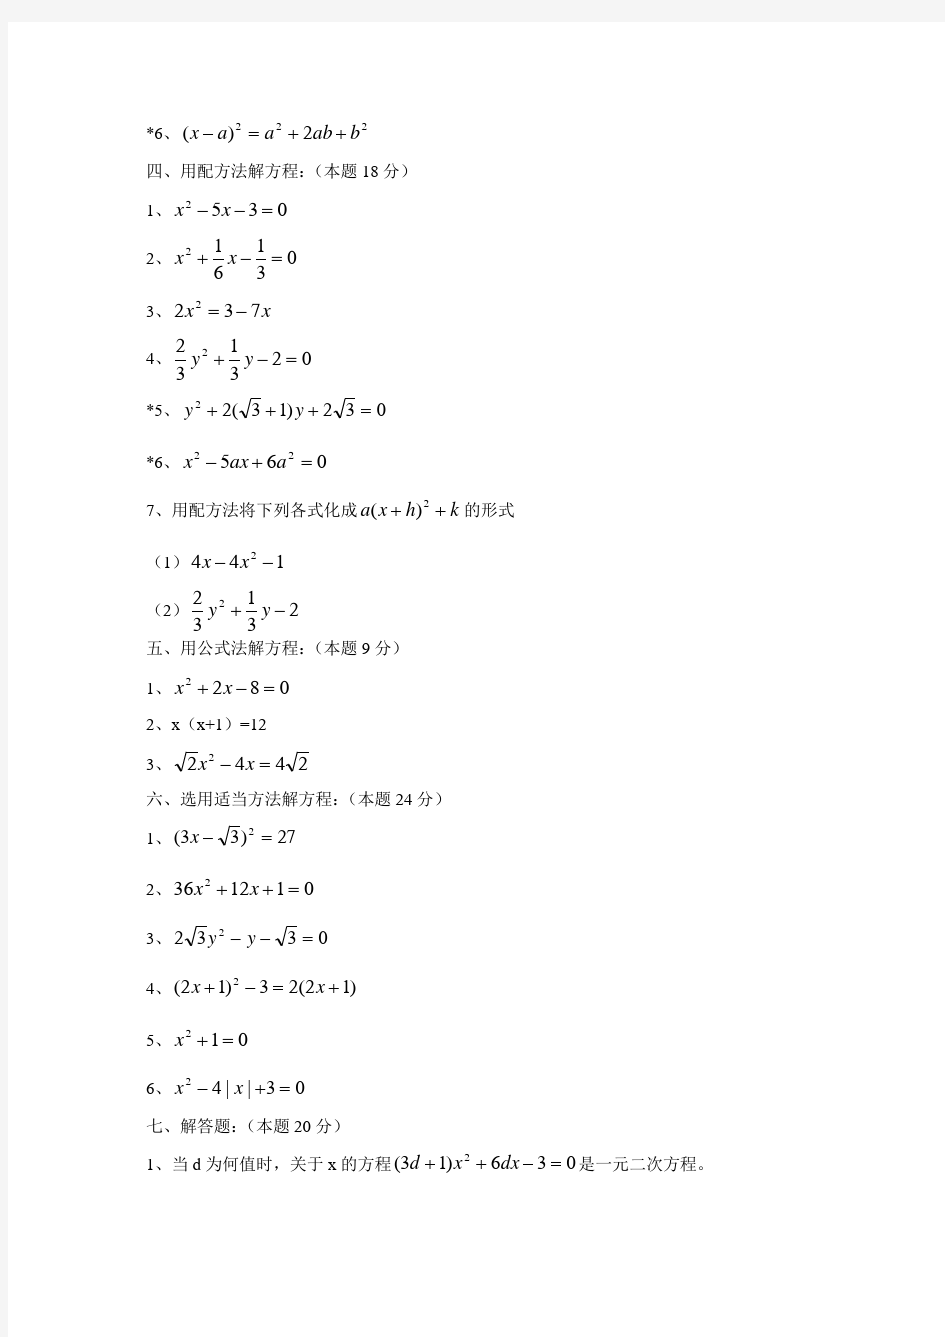 (完整)八年级数学一元二次方程单元练习题